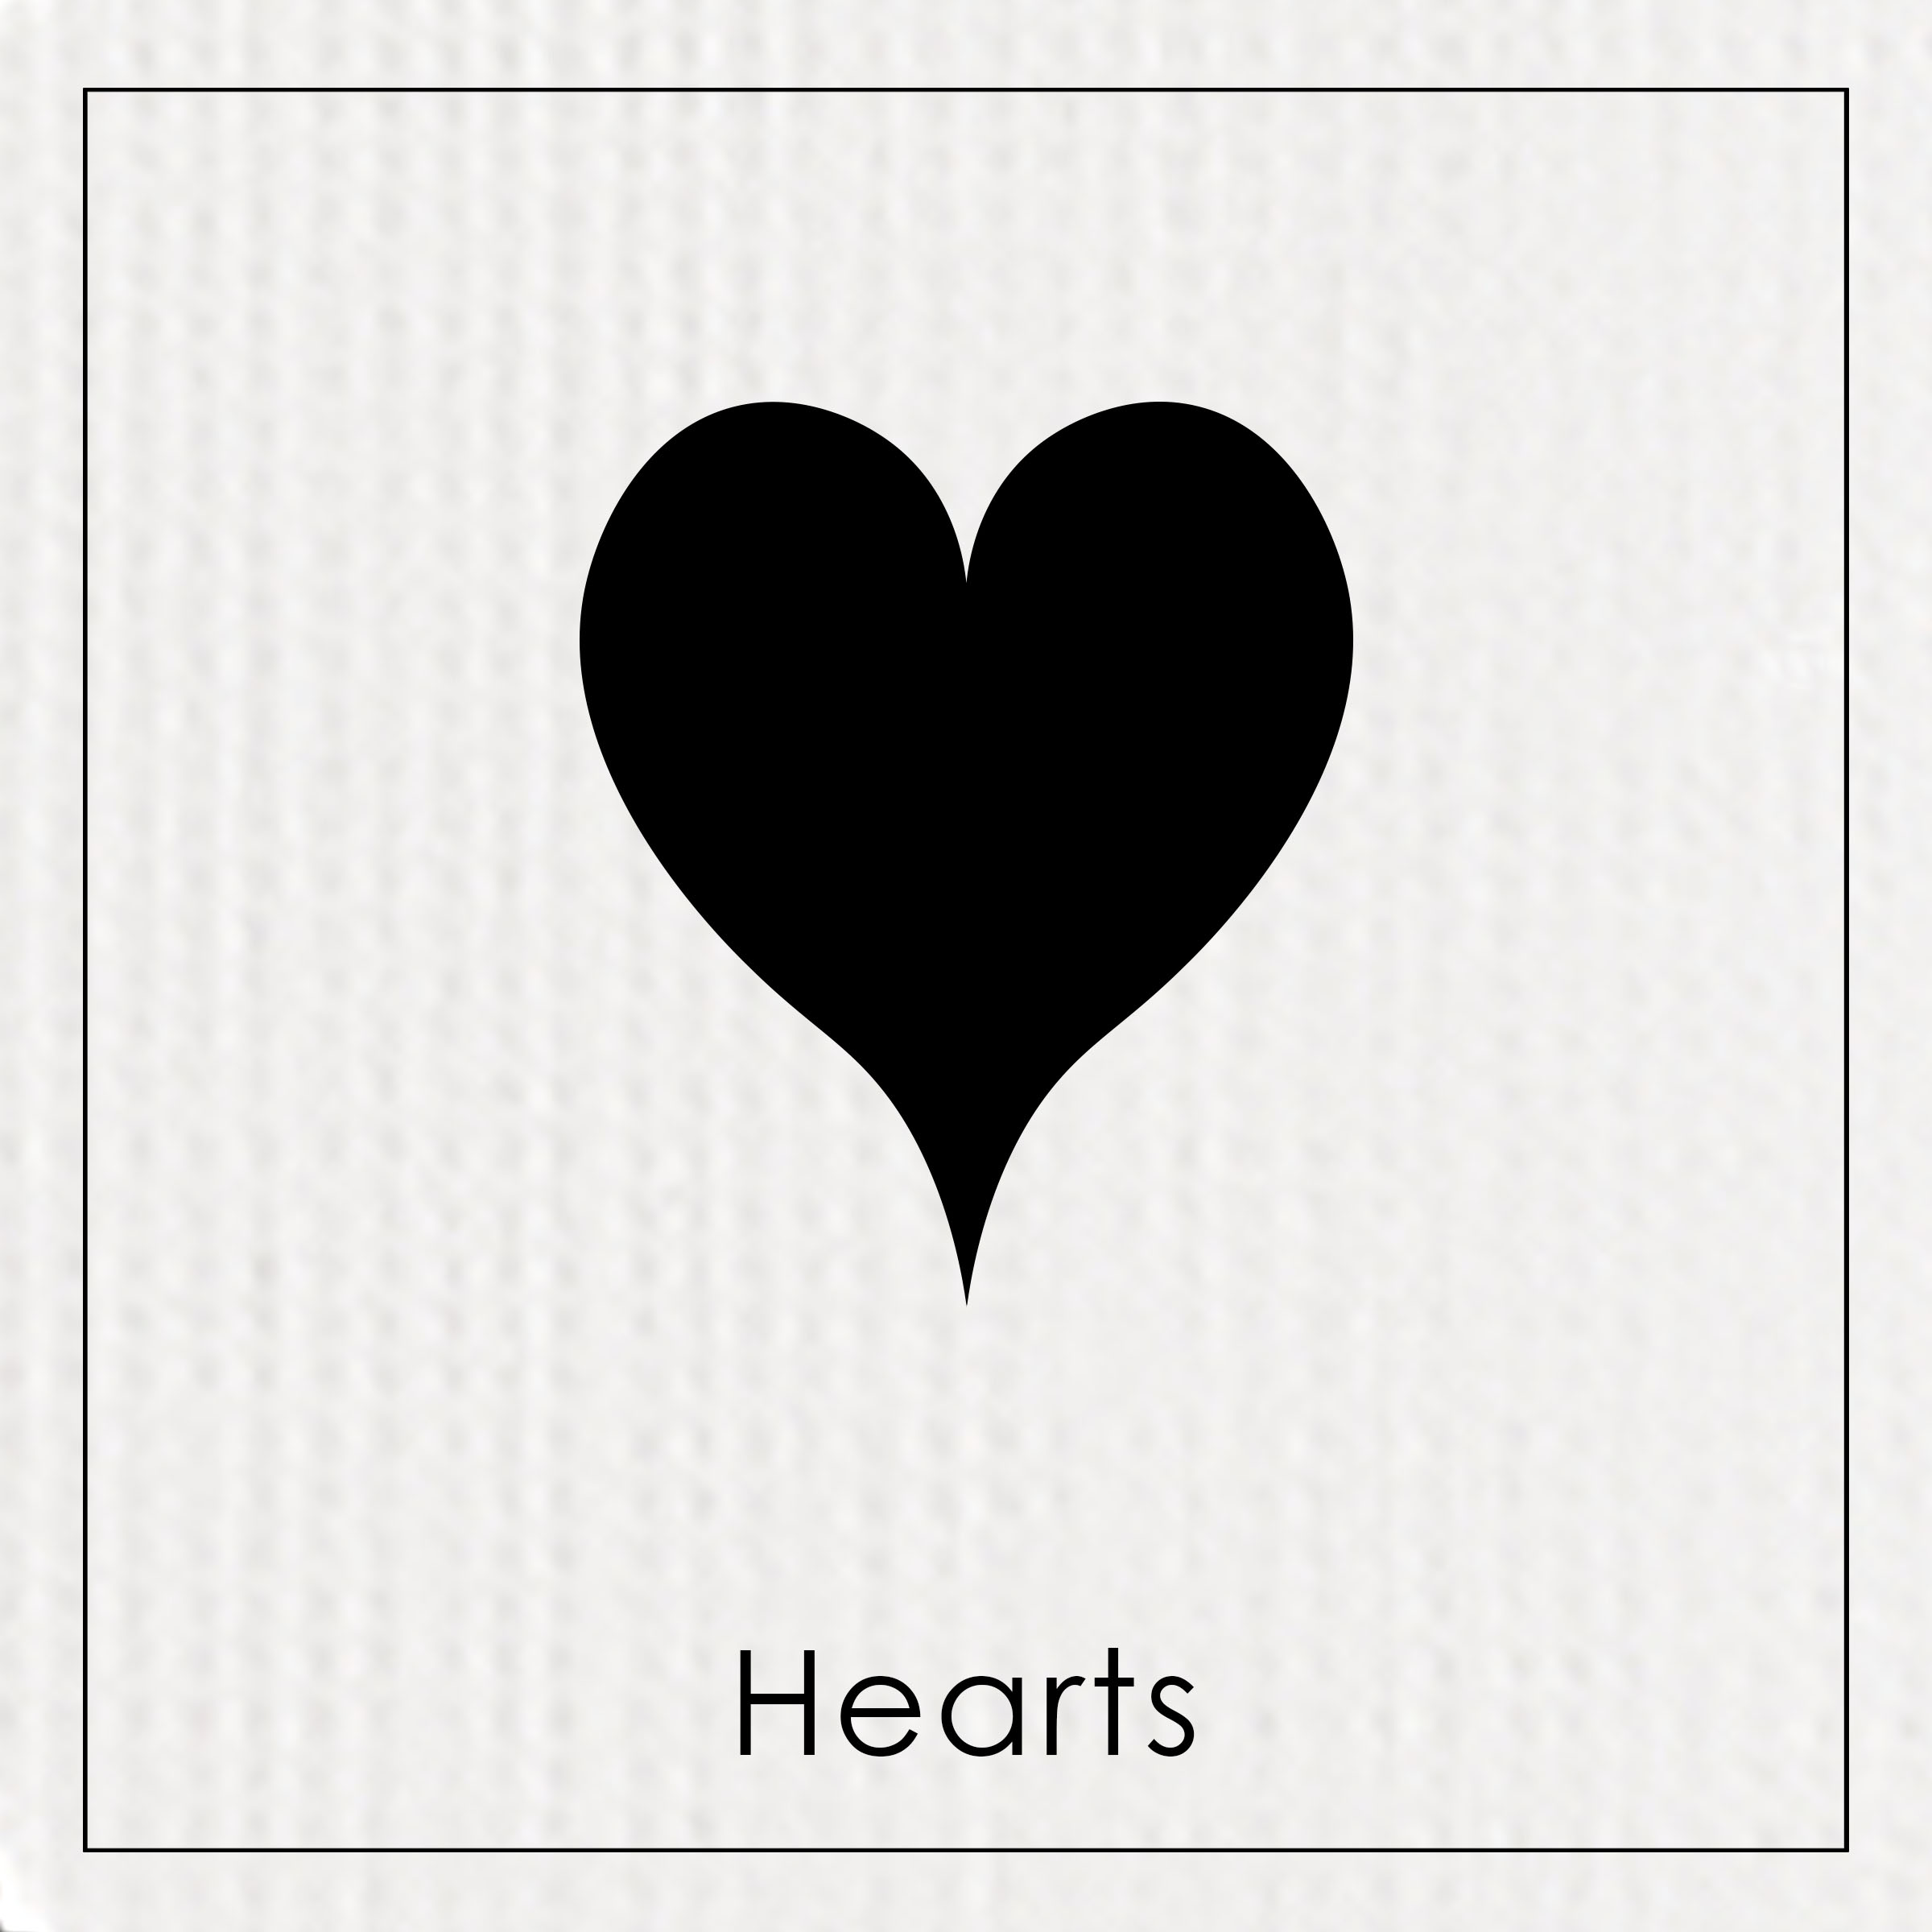 HEARTS